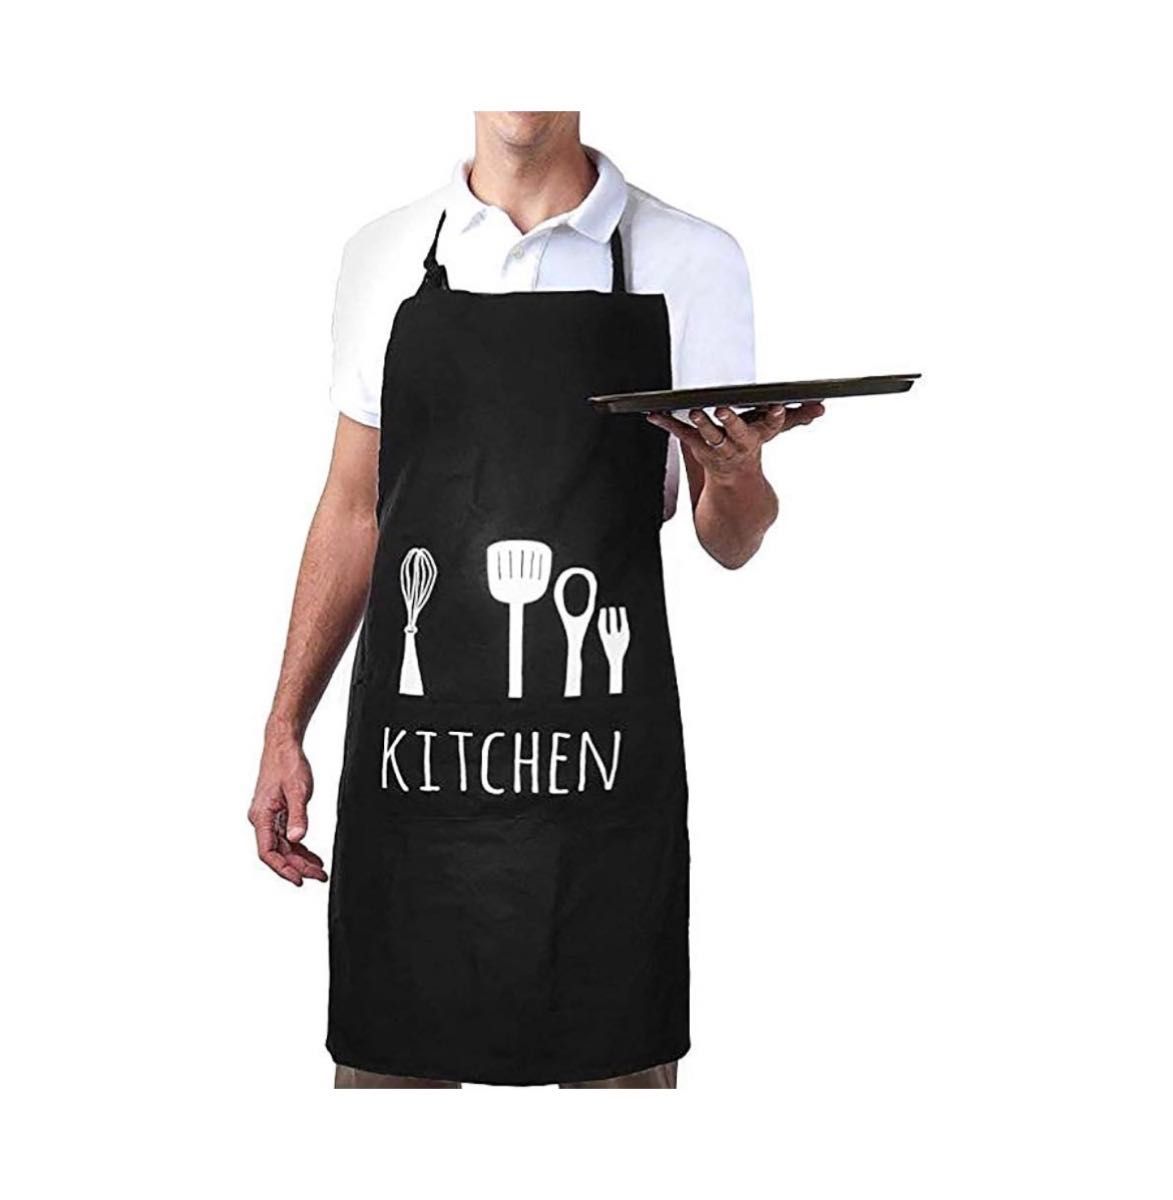 エプロン 女性用 柄付きh型 業務用 キッチン メンズ 男女兼用 黒 新品未使用 ブラック 料理 ポケット付き kitchen